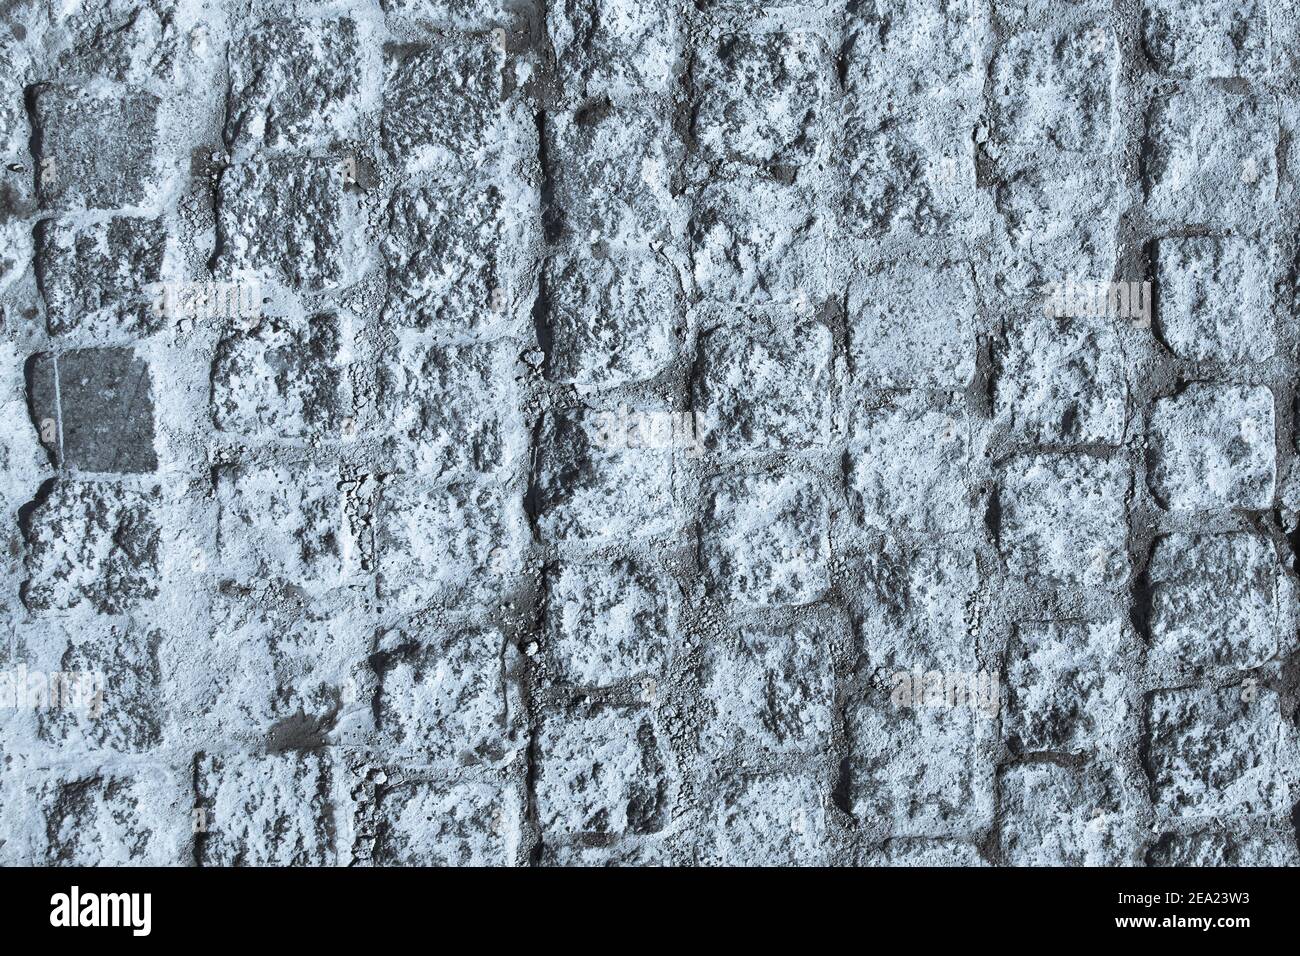 Schwarze und weiße Pflastersteinpflaster Textur. Nahaufnahme von Blöcken. Blau getöntes Bild. Stockfoto